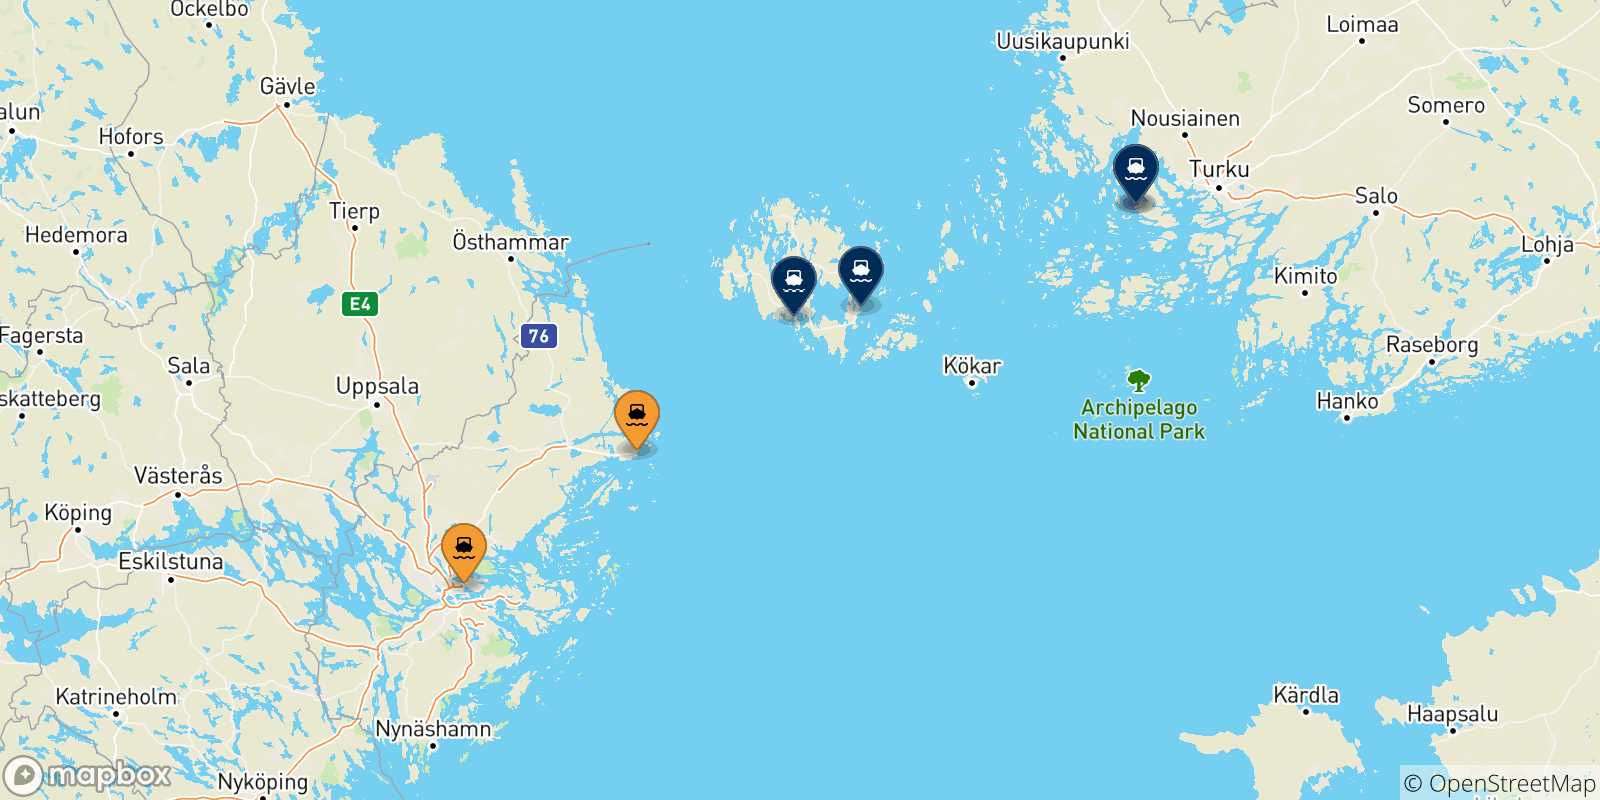 Mappa delle possibili rotte tra la Svezia e la Finlandia